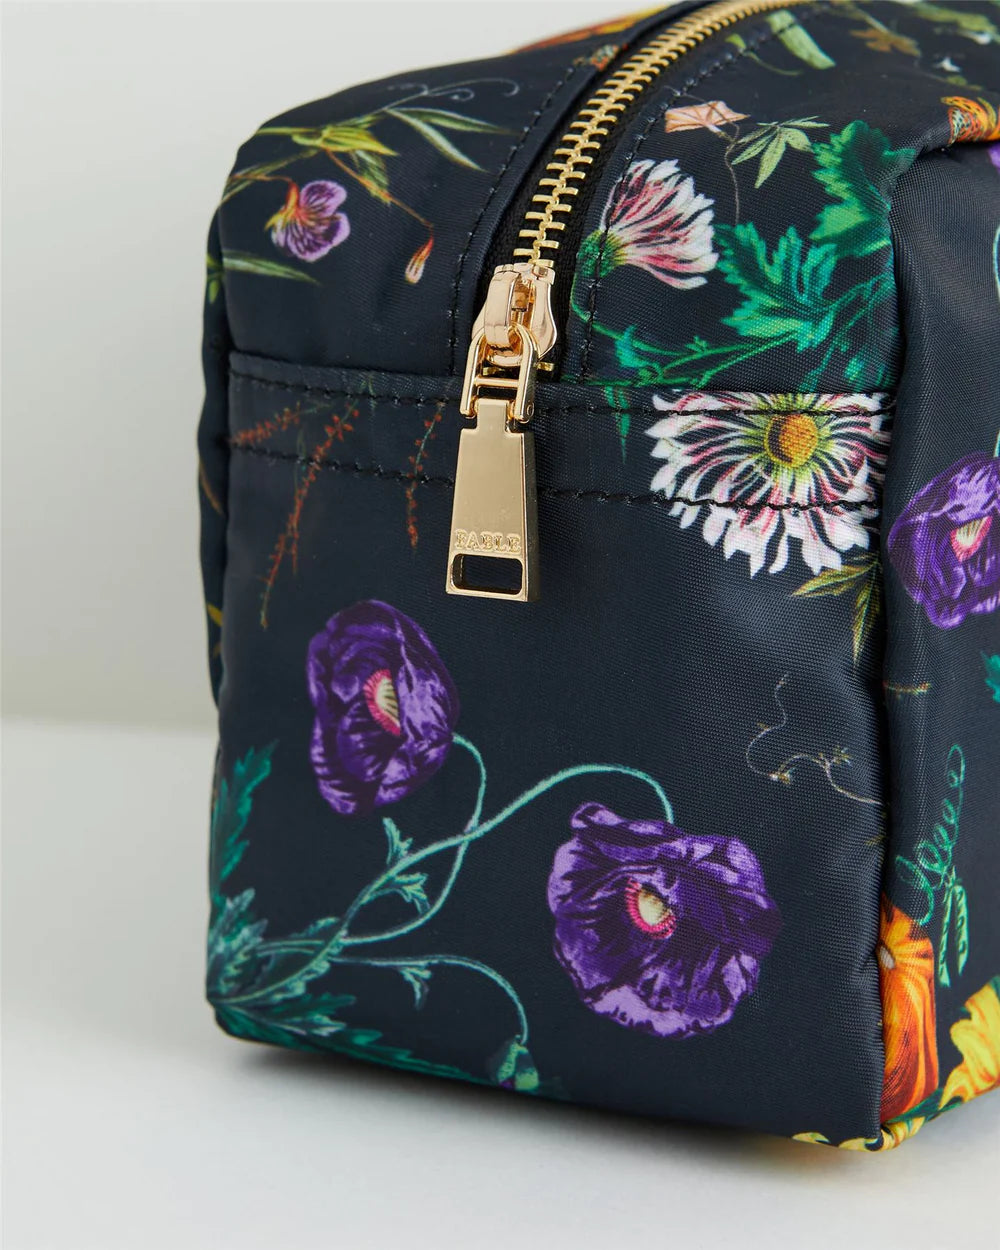 Project Bag - Floral Bag | Pumpkin Black Travel Pouch | Nylon